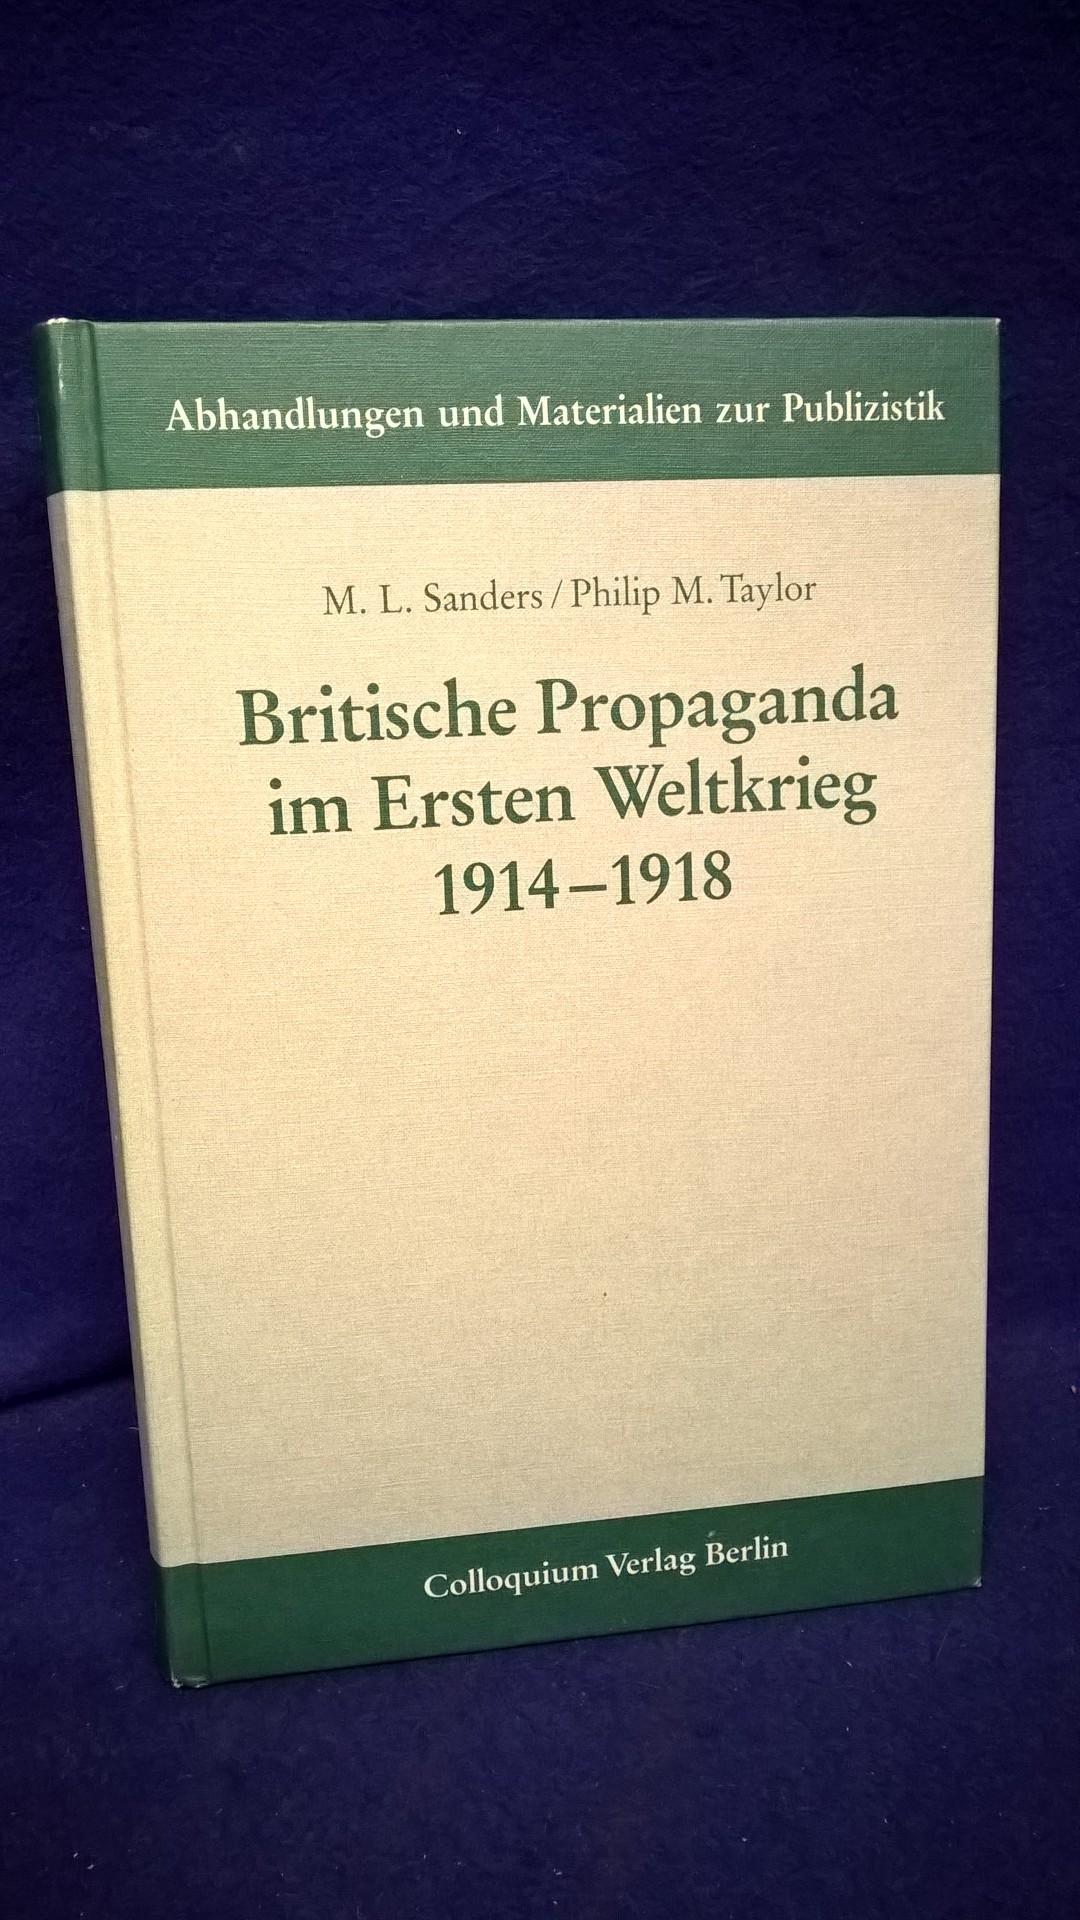 Britische Propaganda im Ersten Weltkrieg 1914 - 1918.